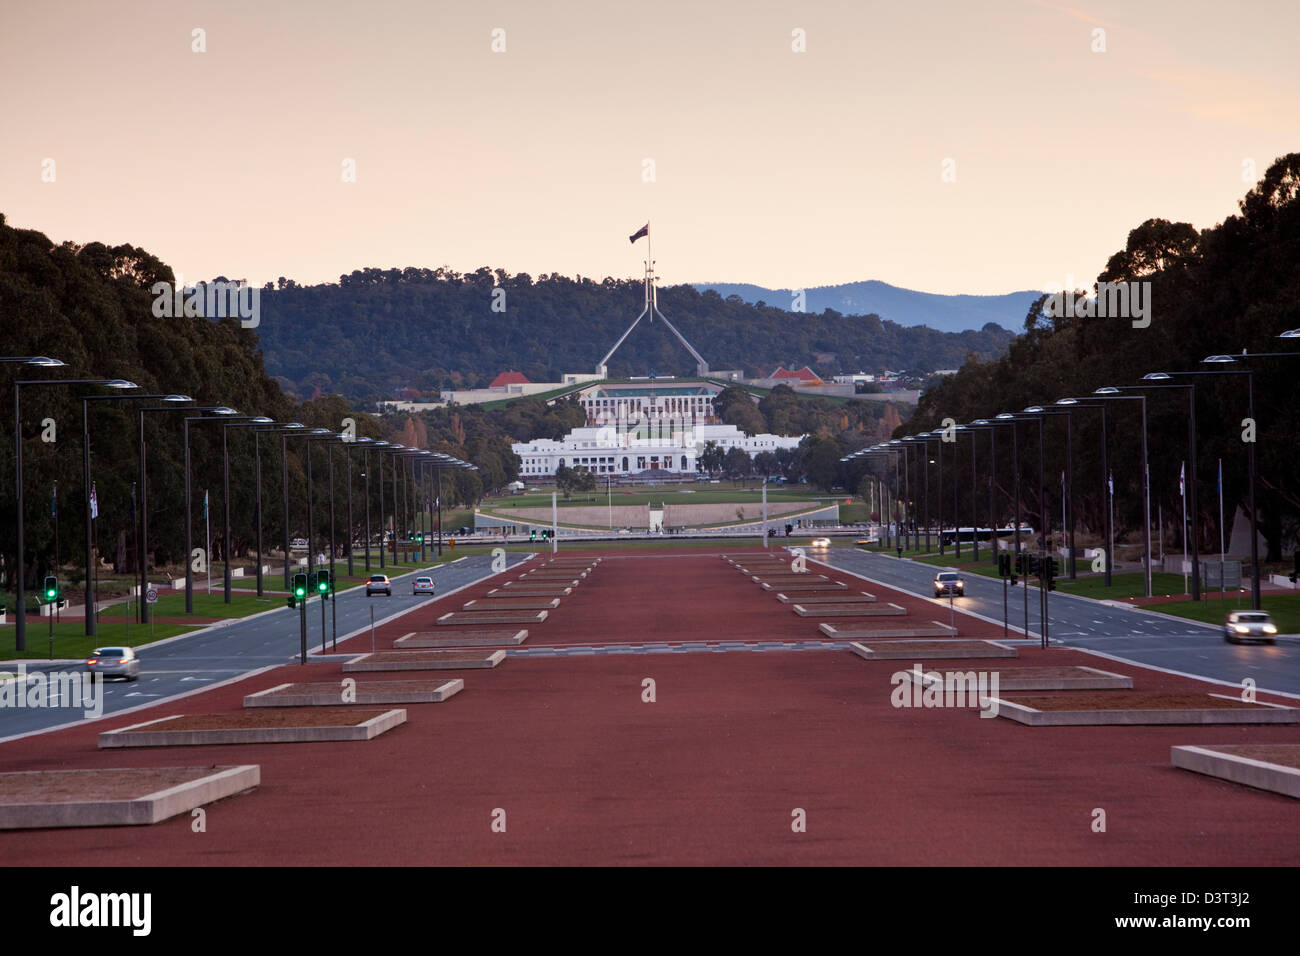 Blick entlang der Anzac Parade, Parliament House in der Dämmerung. Canberra, Australian Capital Territory (ACT), Australien Stockfoto